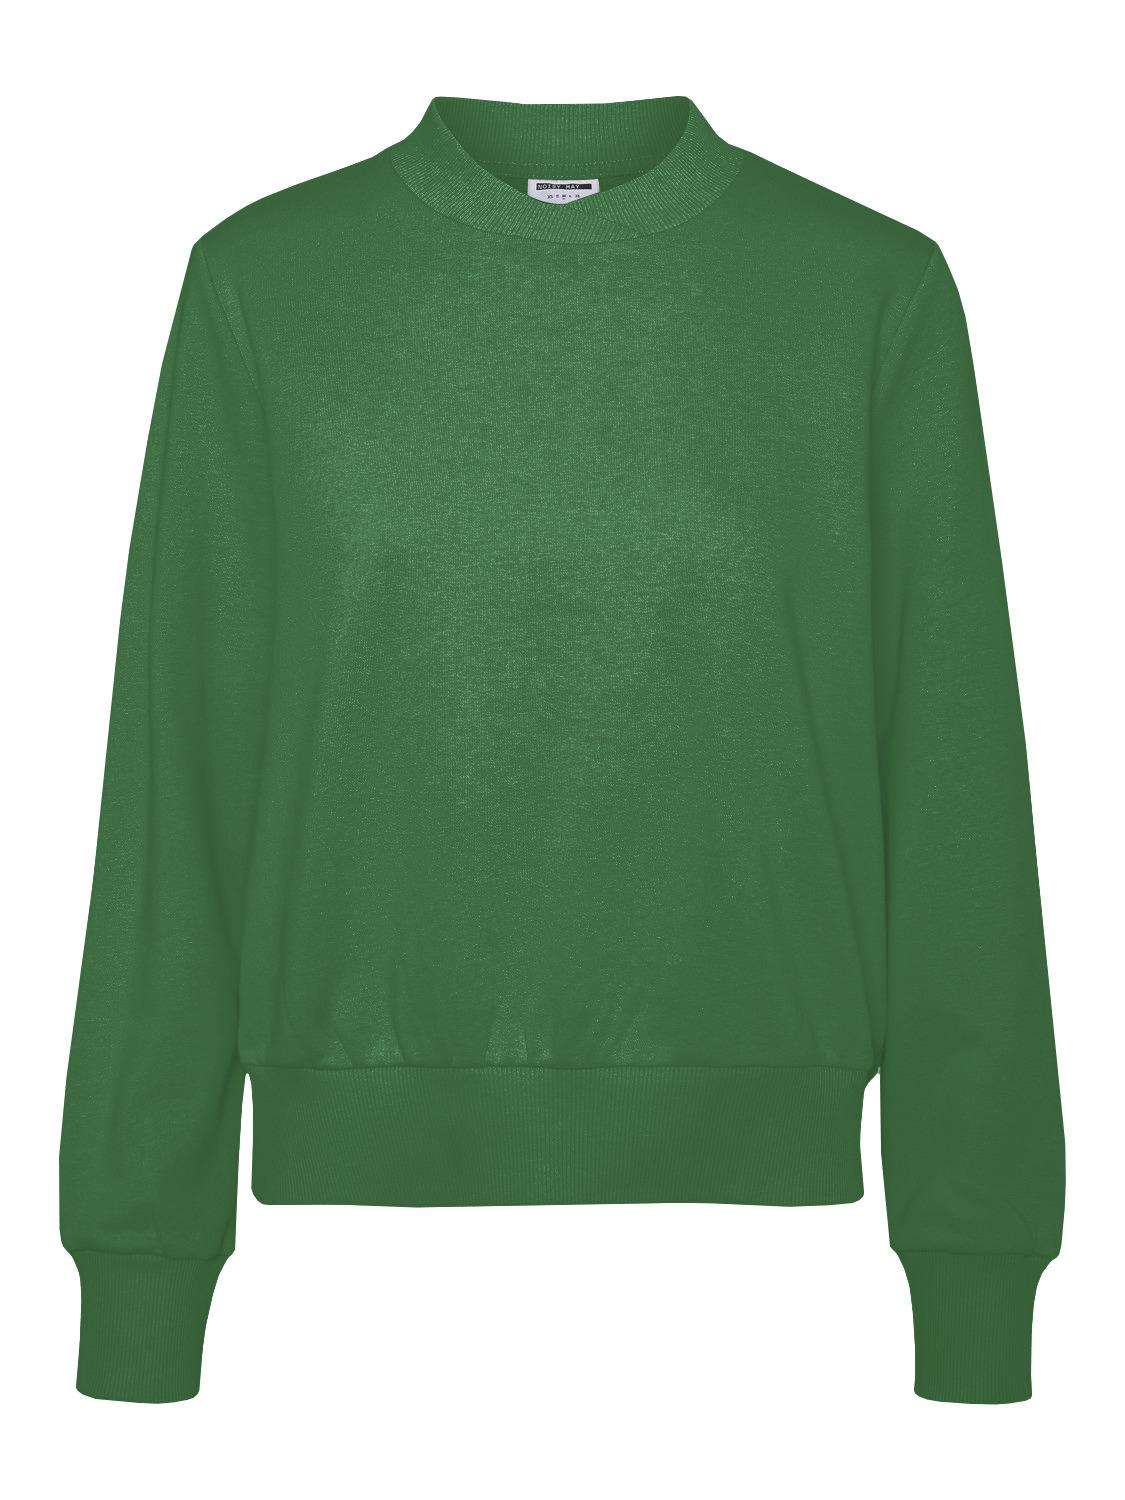  Lupa Logo Sweatshirt, Amazon, XL